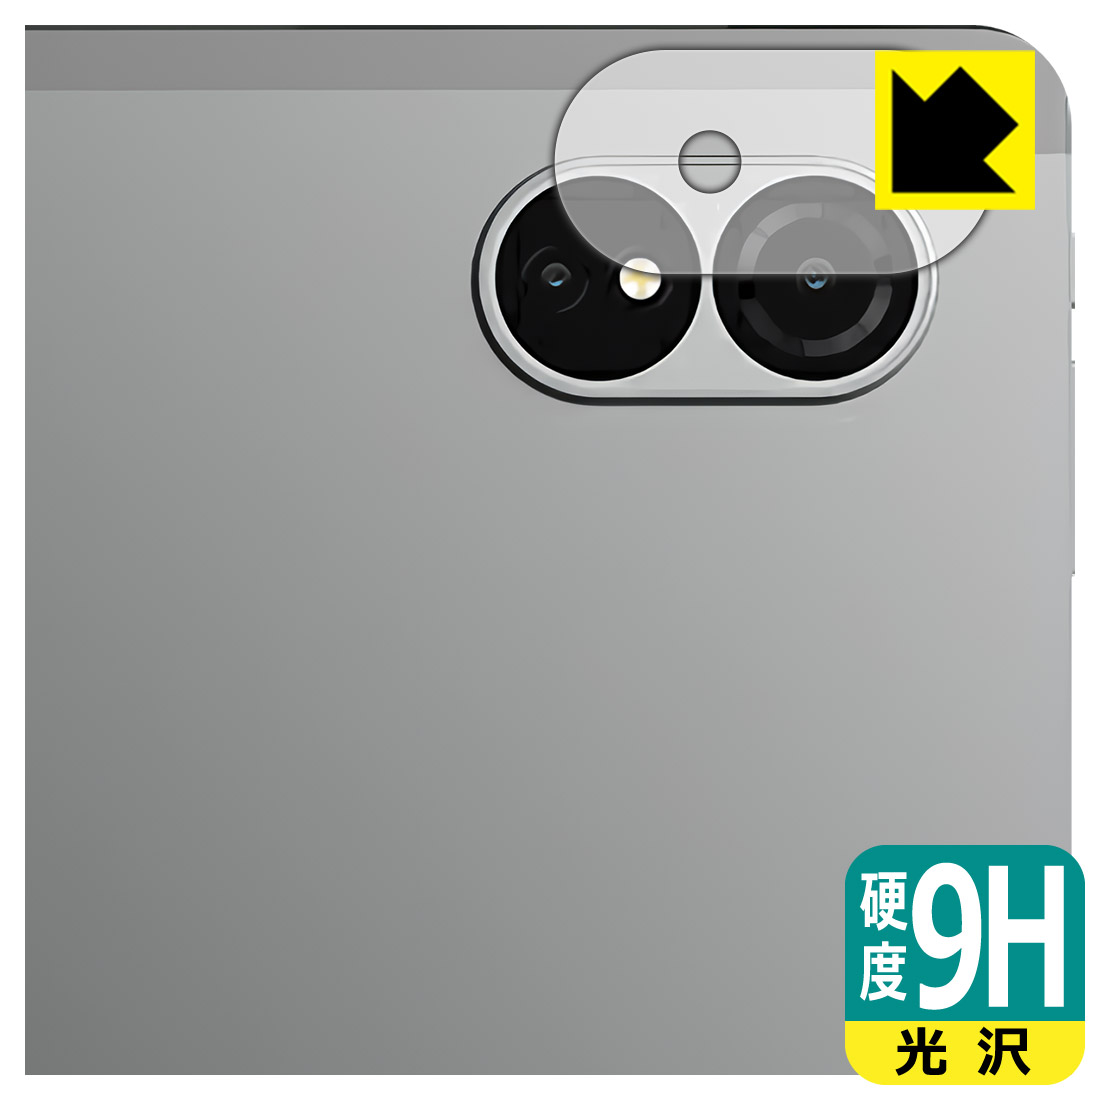 9H高硬度【光沢】保護フィルム ALLDOCUBE iPlay 60 Lite (カメラレンズ部用) 日本製 自社製造直販